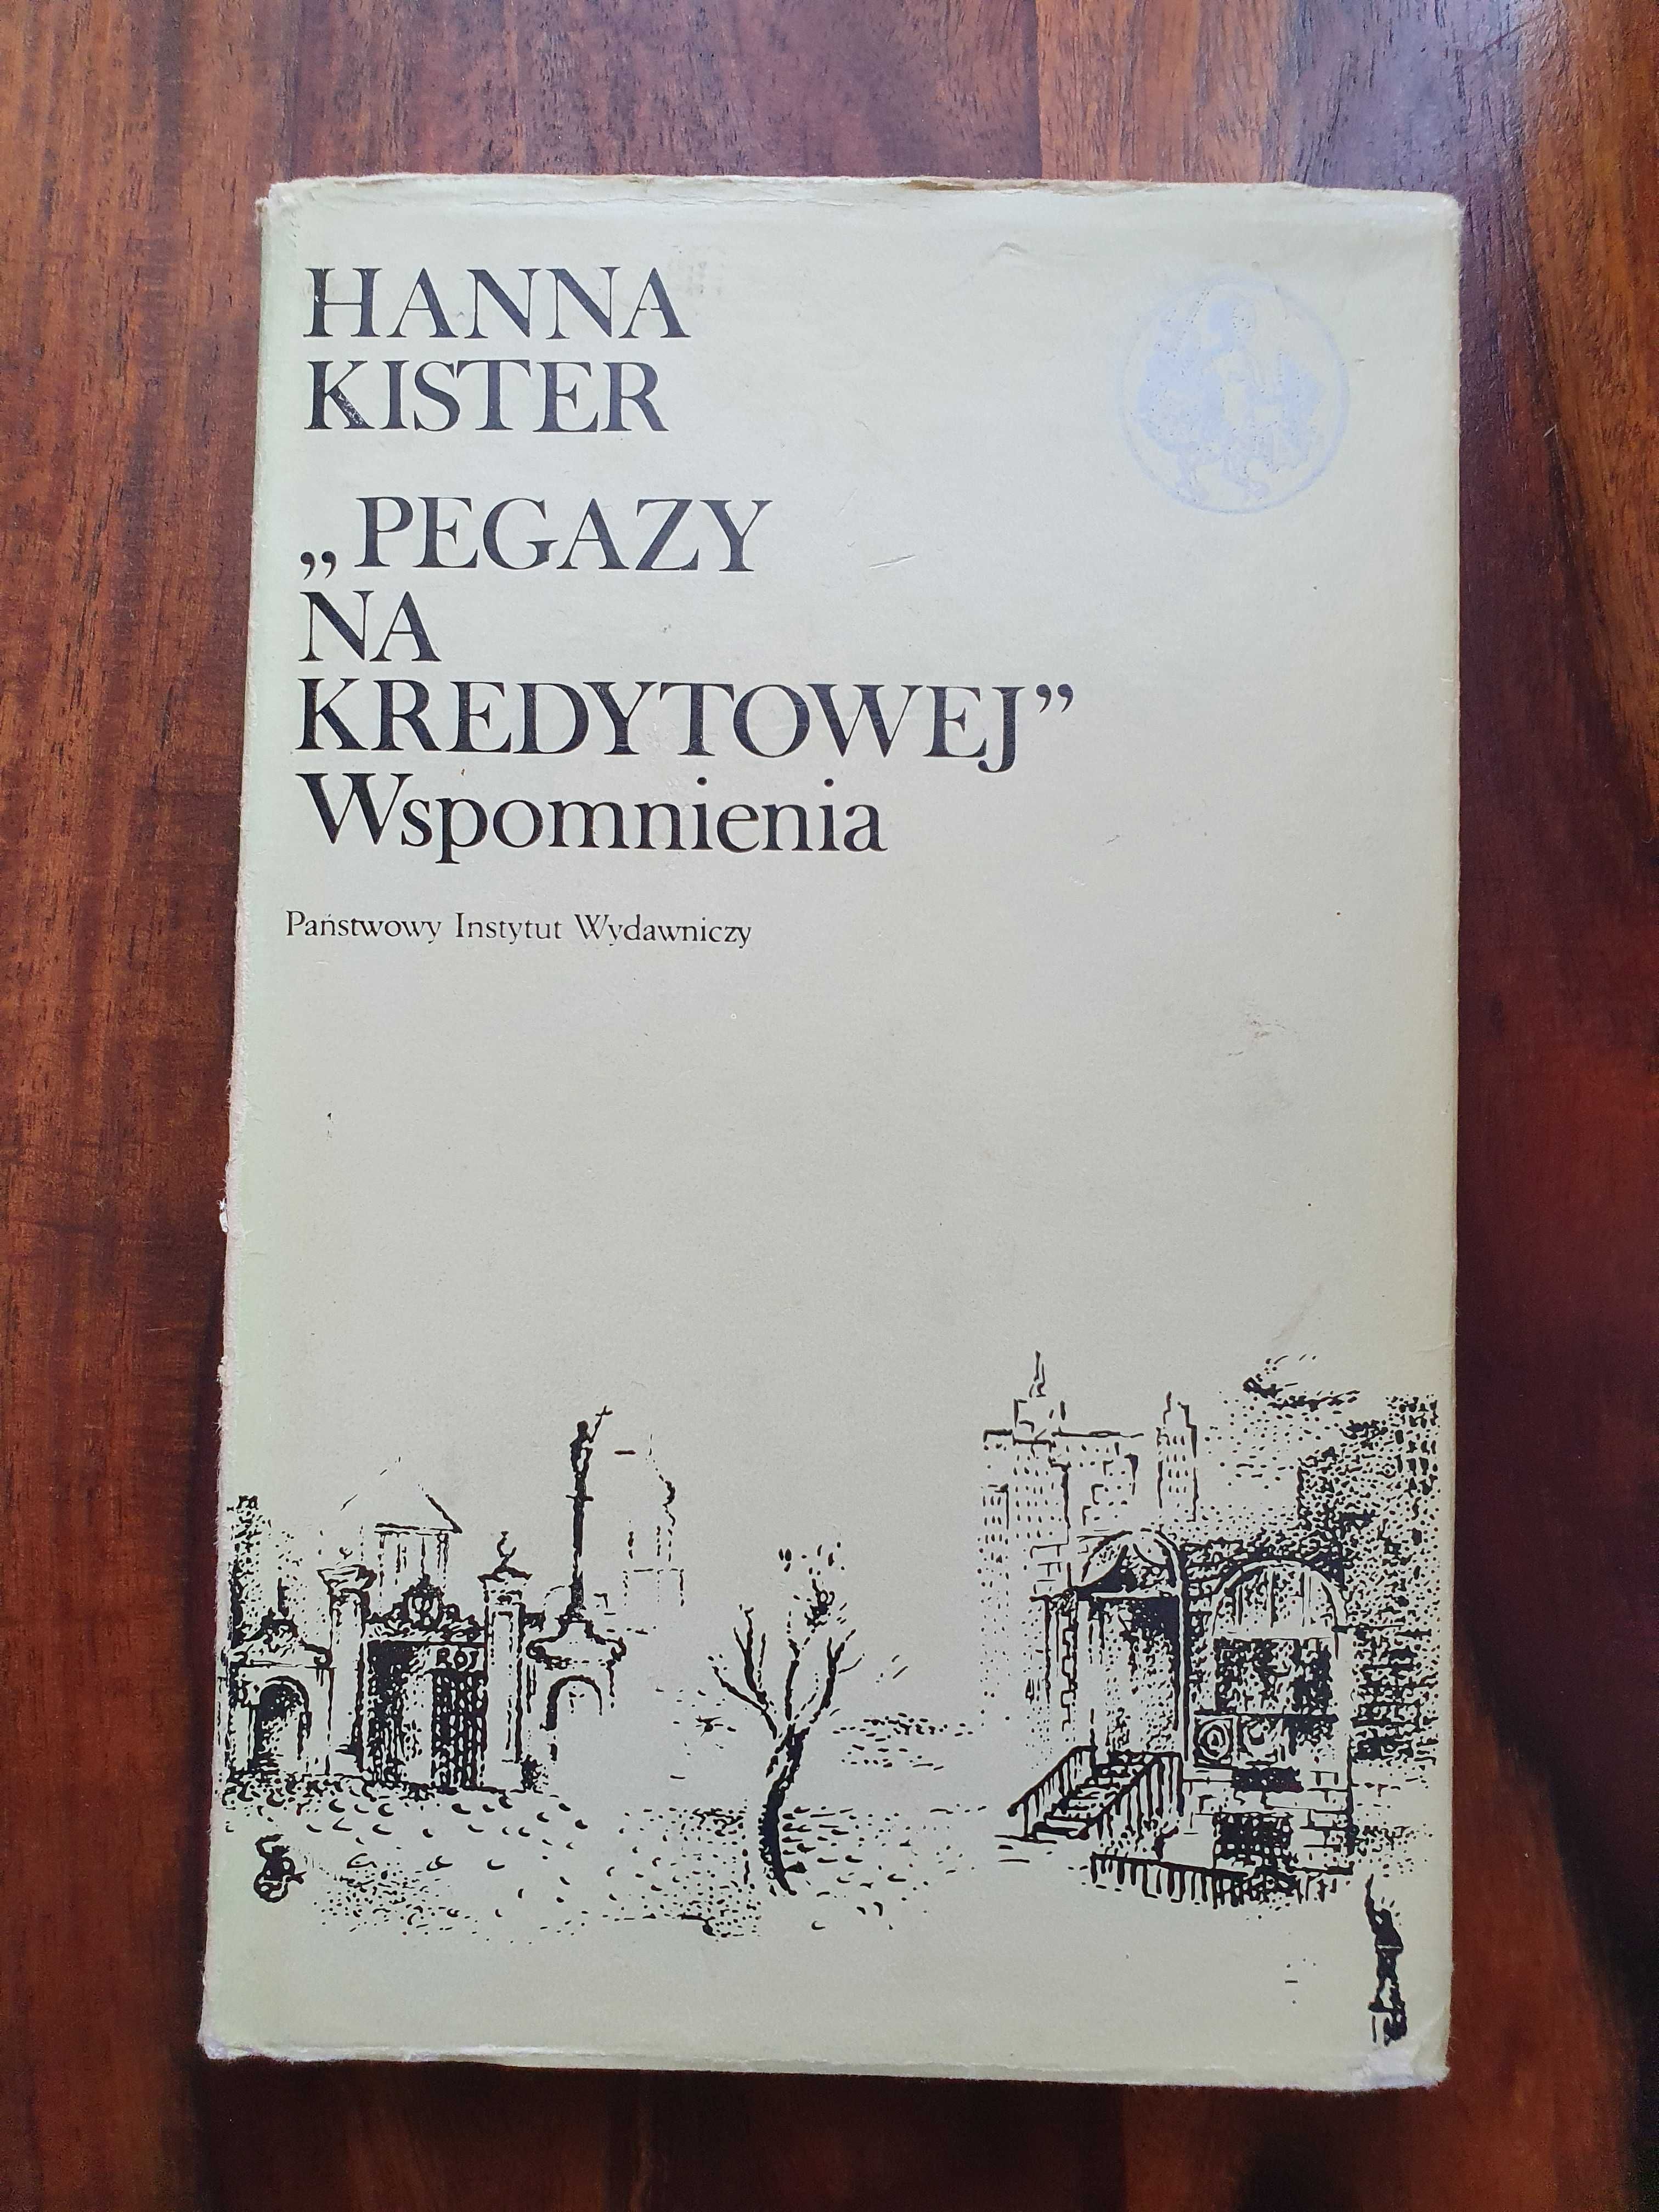 Kister Hanna - "Pegazy na Kredytowej". Wspomnienia.